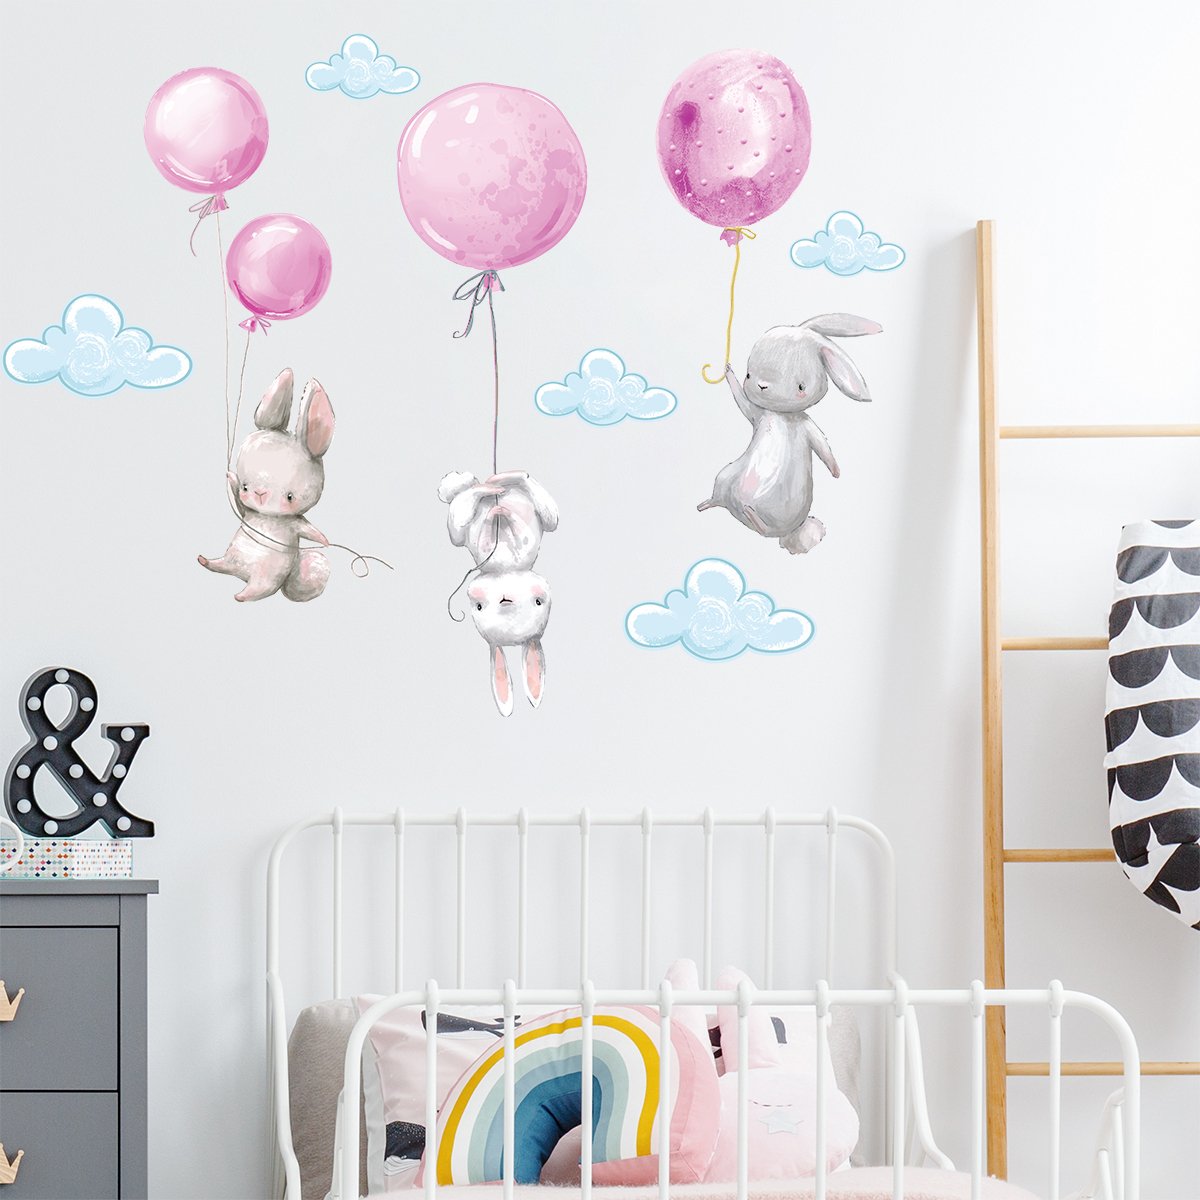 Naklejki na ścianę króliki i różowe baloniki#kolor_rozowy